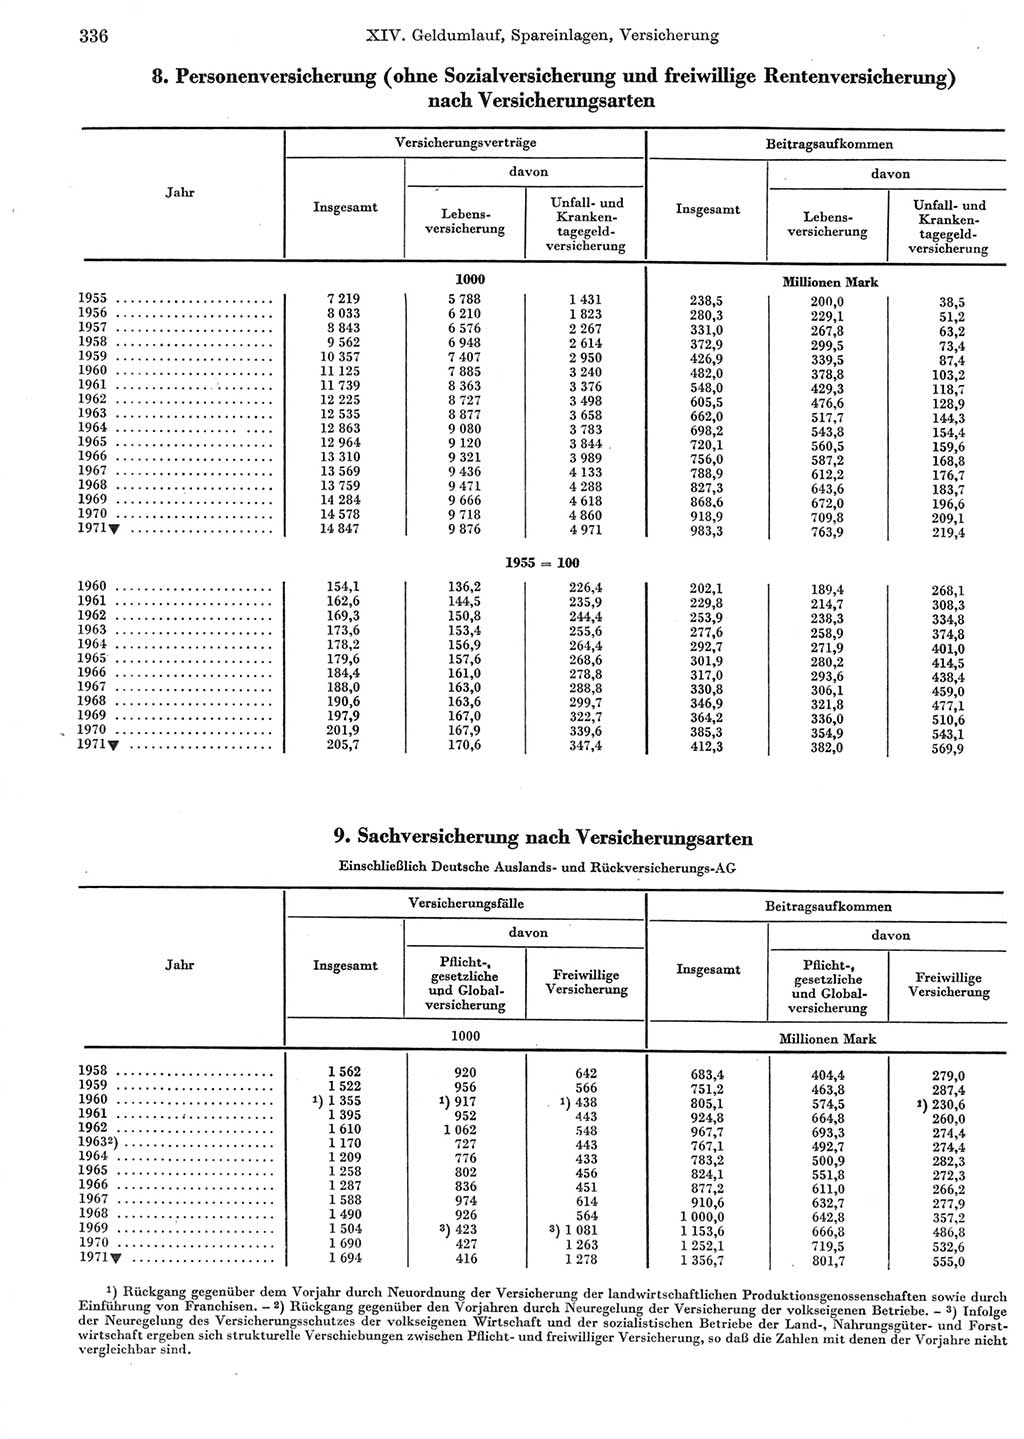 Statistisches Jahrbuch der Deutschen Demokratischen Republik (DDR) 1972, Seite 336 (Stat. Jb. DDR 1972, S. 336)